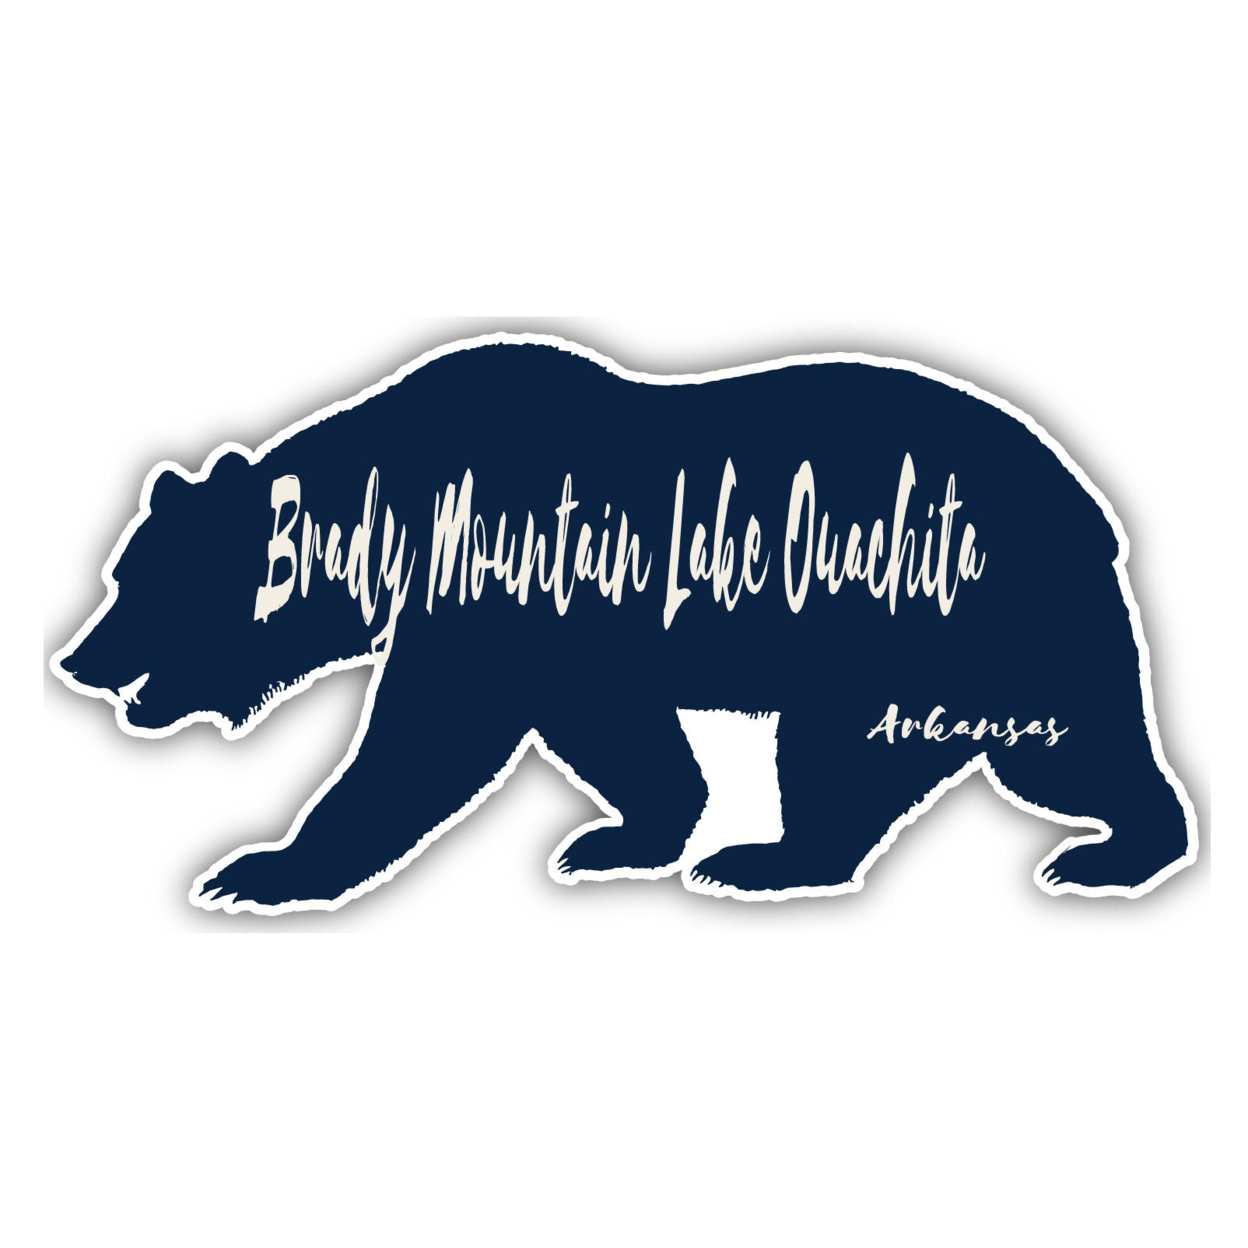 Brady Mountain Lake Ouachita Arkansas Souvenir Decorative Stickers (Choose Theme And Size) - 4-Pack, 8-Inch, Tent